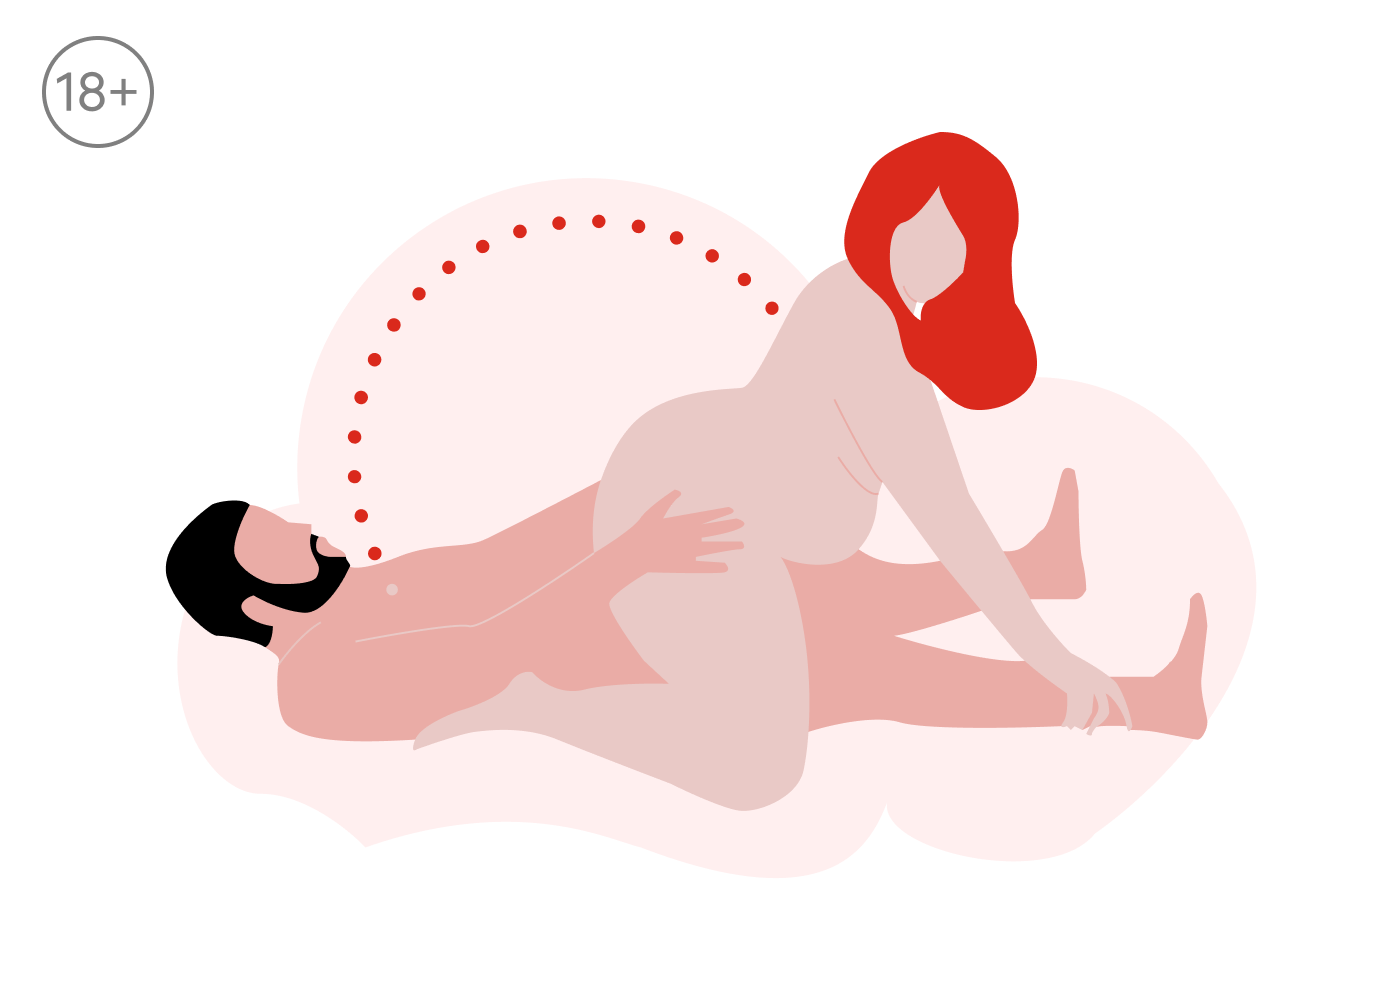 Секс после переедания: четыре позы для тех, кто мечтает об оргазме после новогоднего застолья